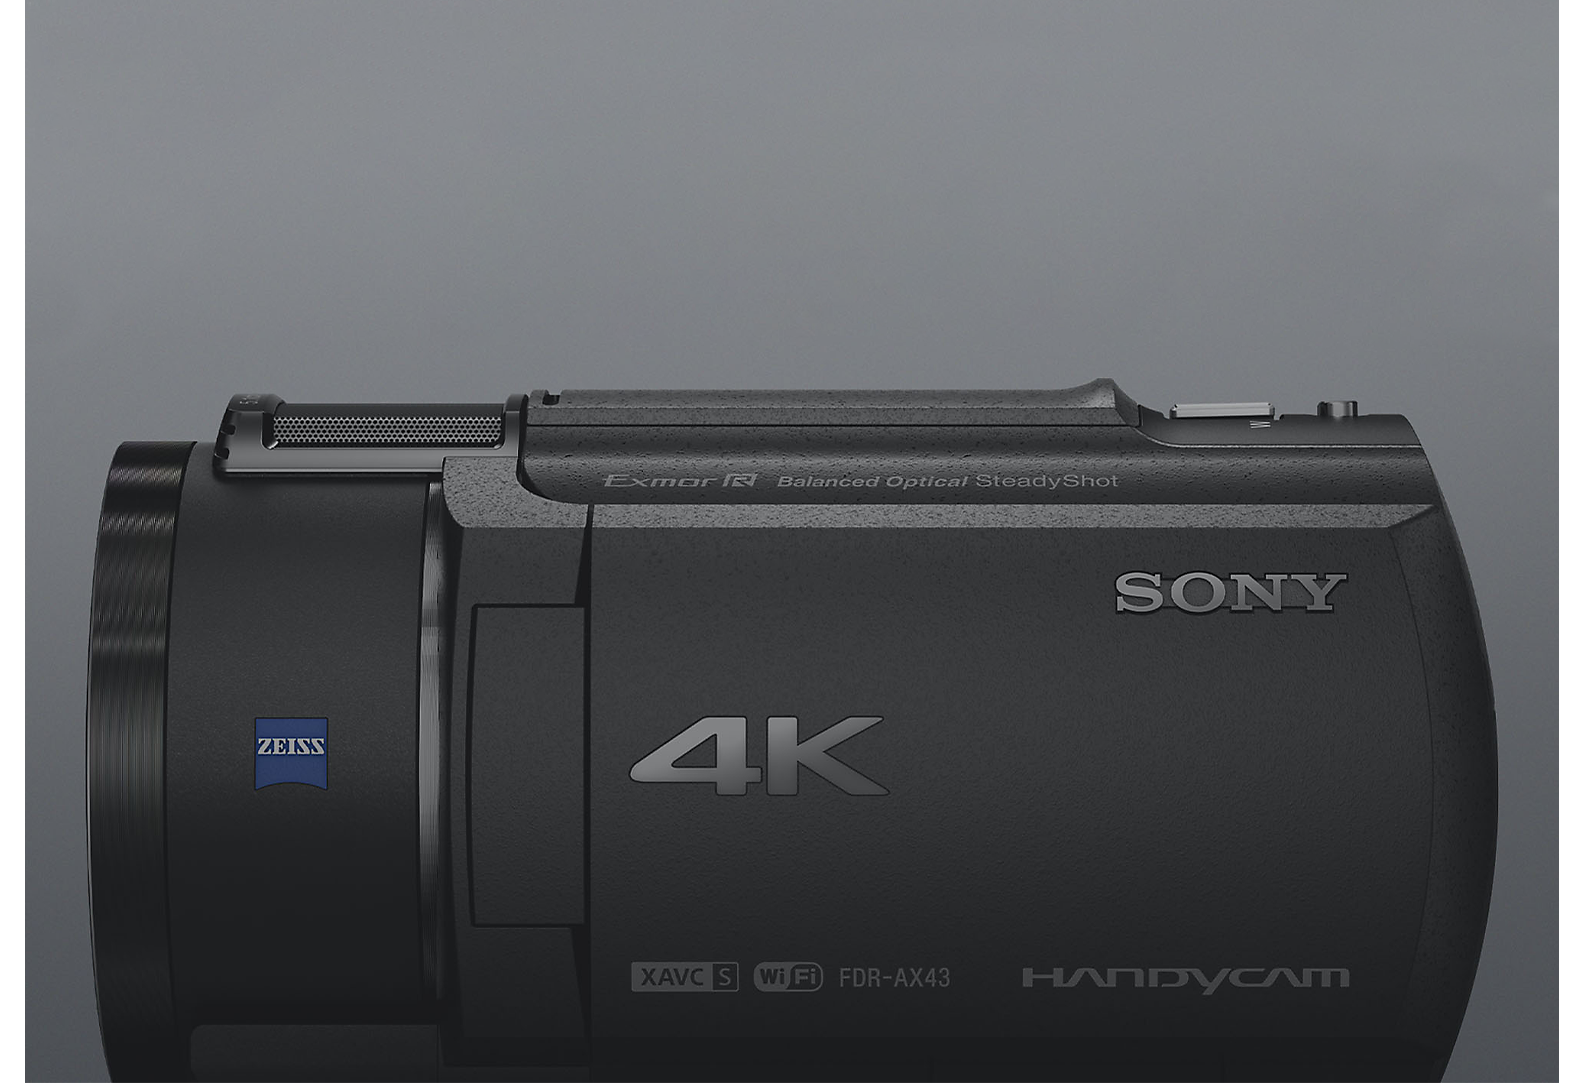 มุมมองด้านข้างของกล้องบันทึกวิดีโอ 4K Handycam ของ Sony